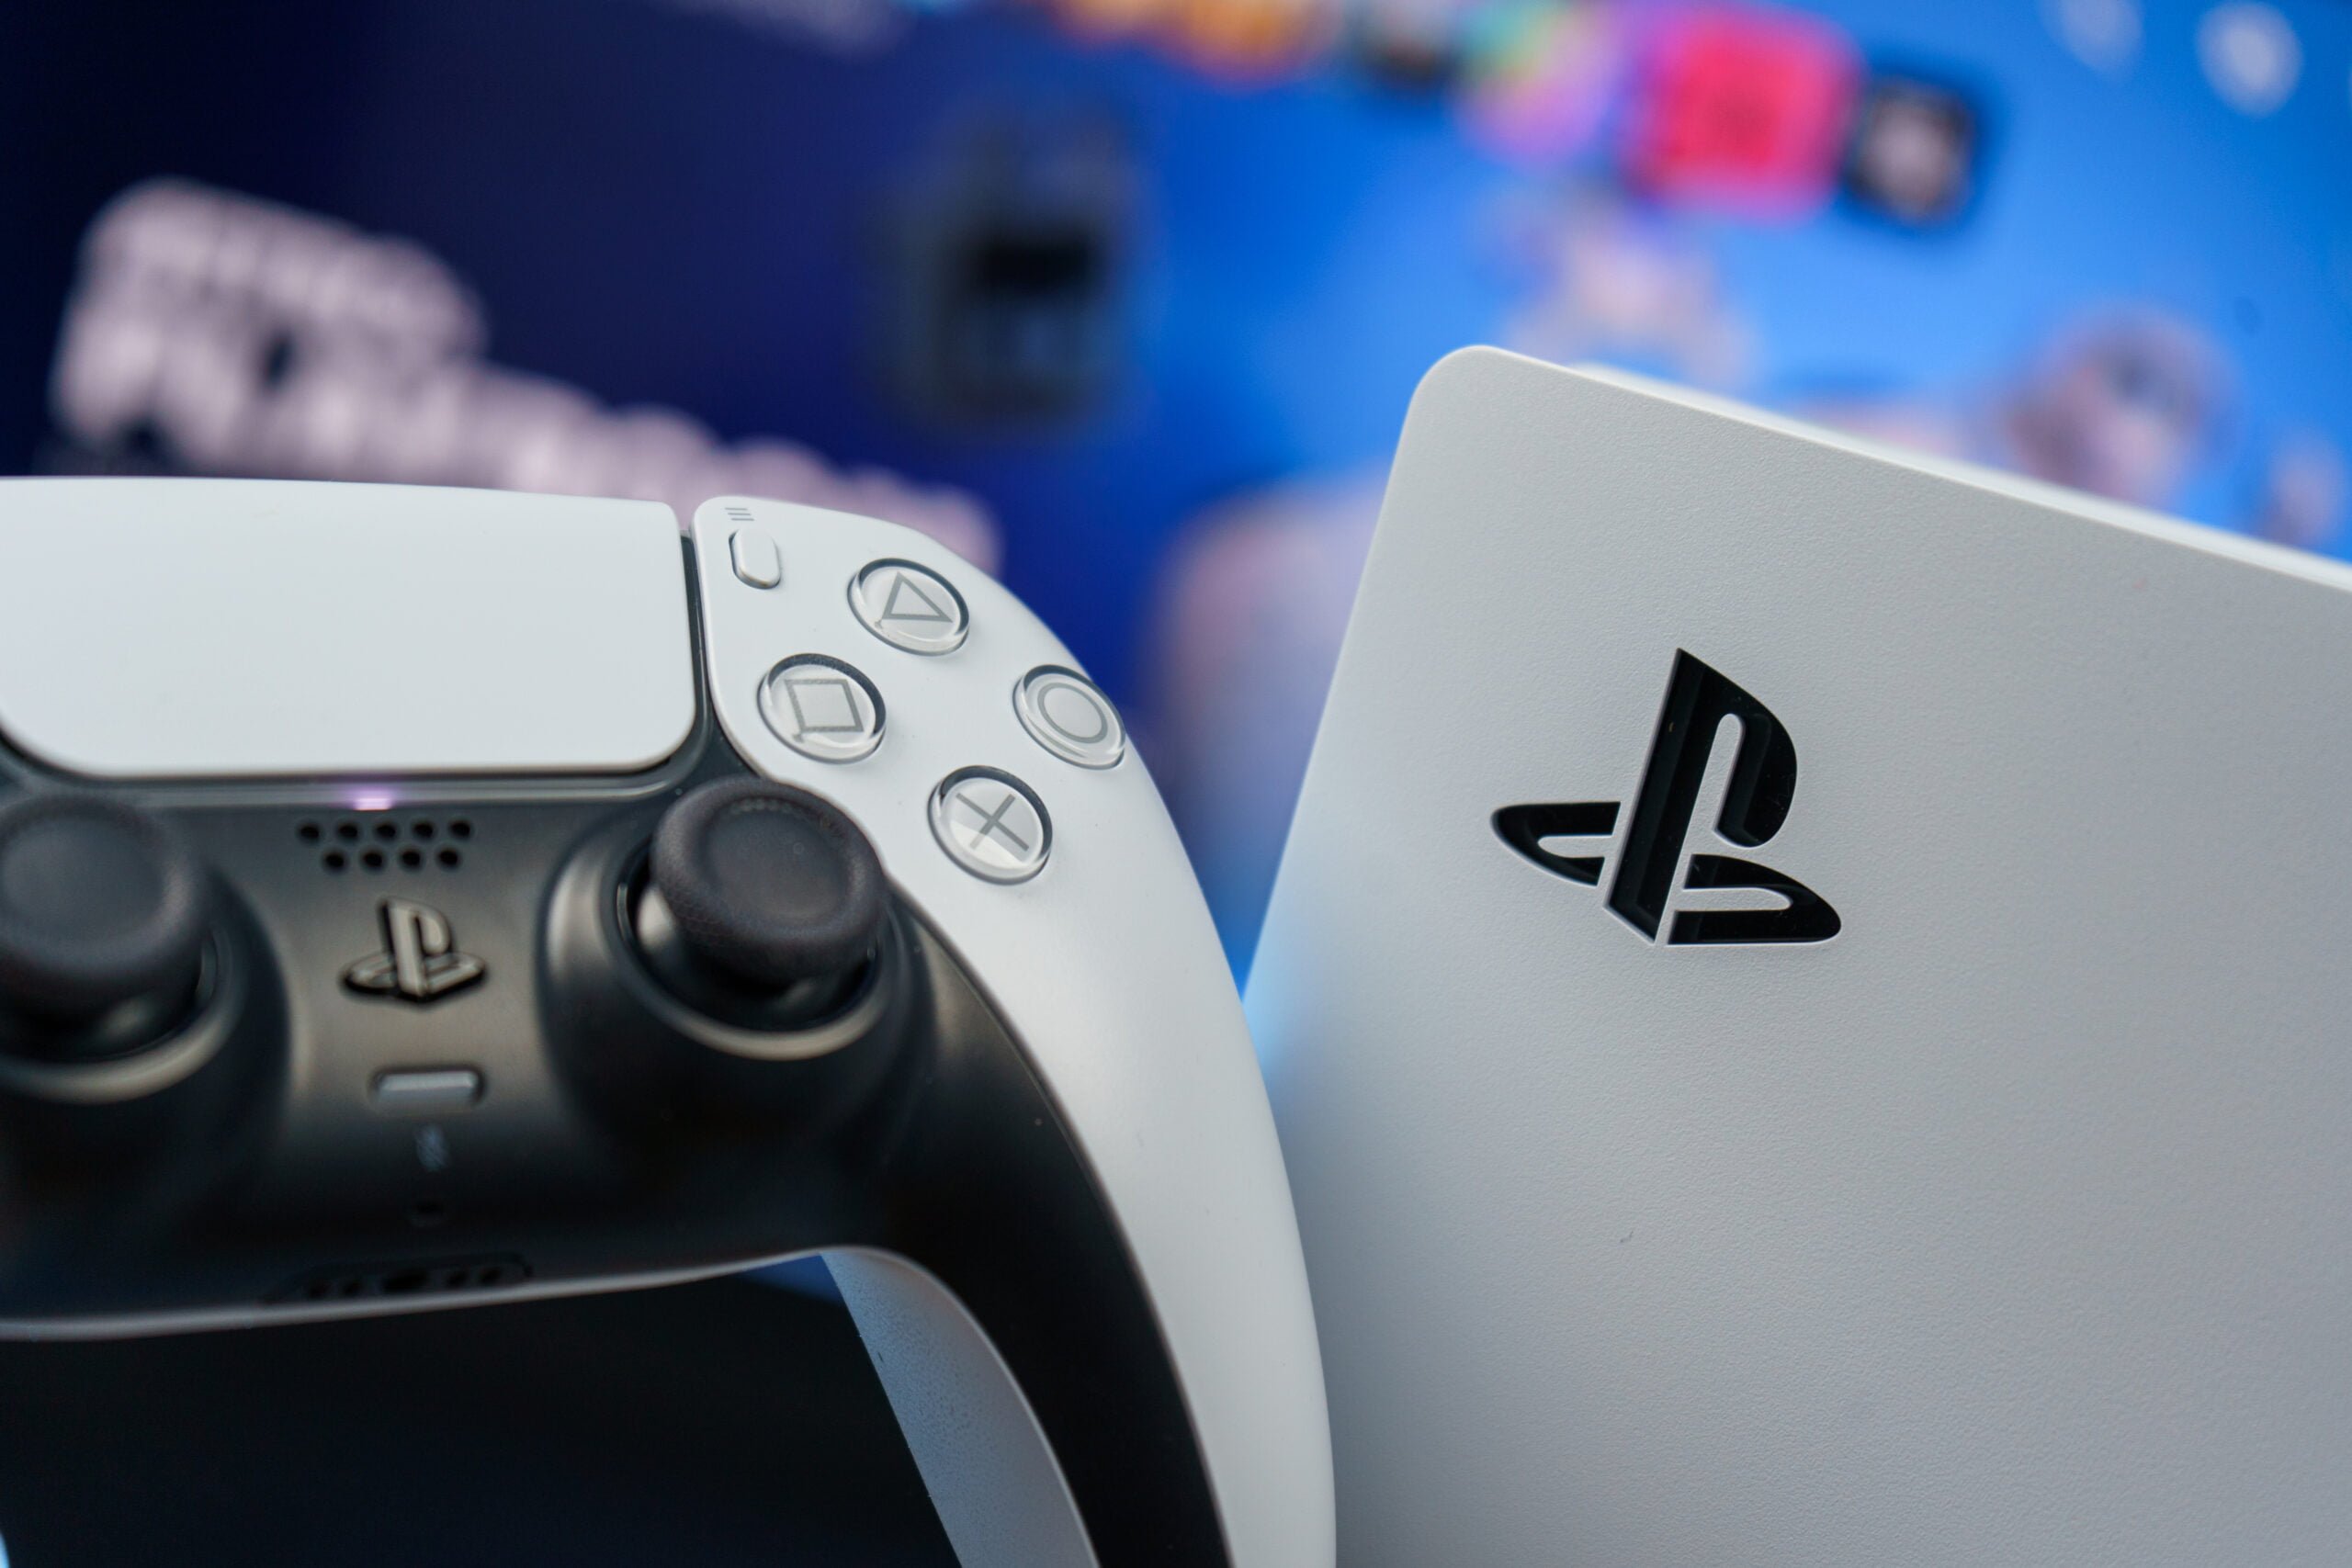 Pad do gier DualSense PlayStation 5 na pierwszym planie z rozmytym tłem gdzie widnieje logo PlayStation. Twórcy gier działają, by gry działały świetnie.